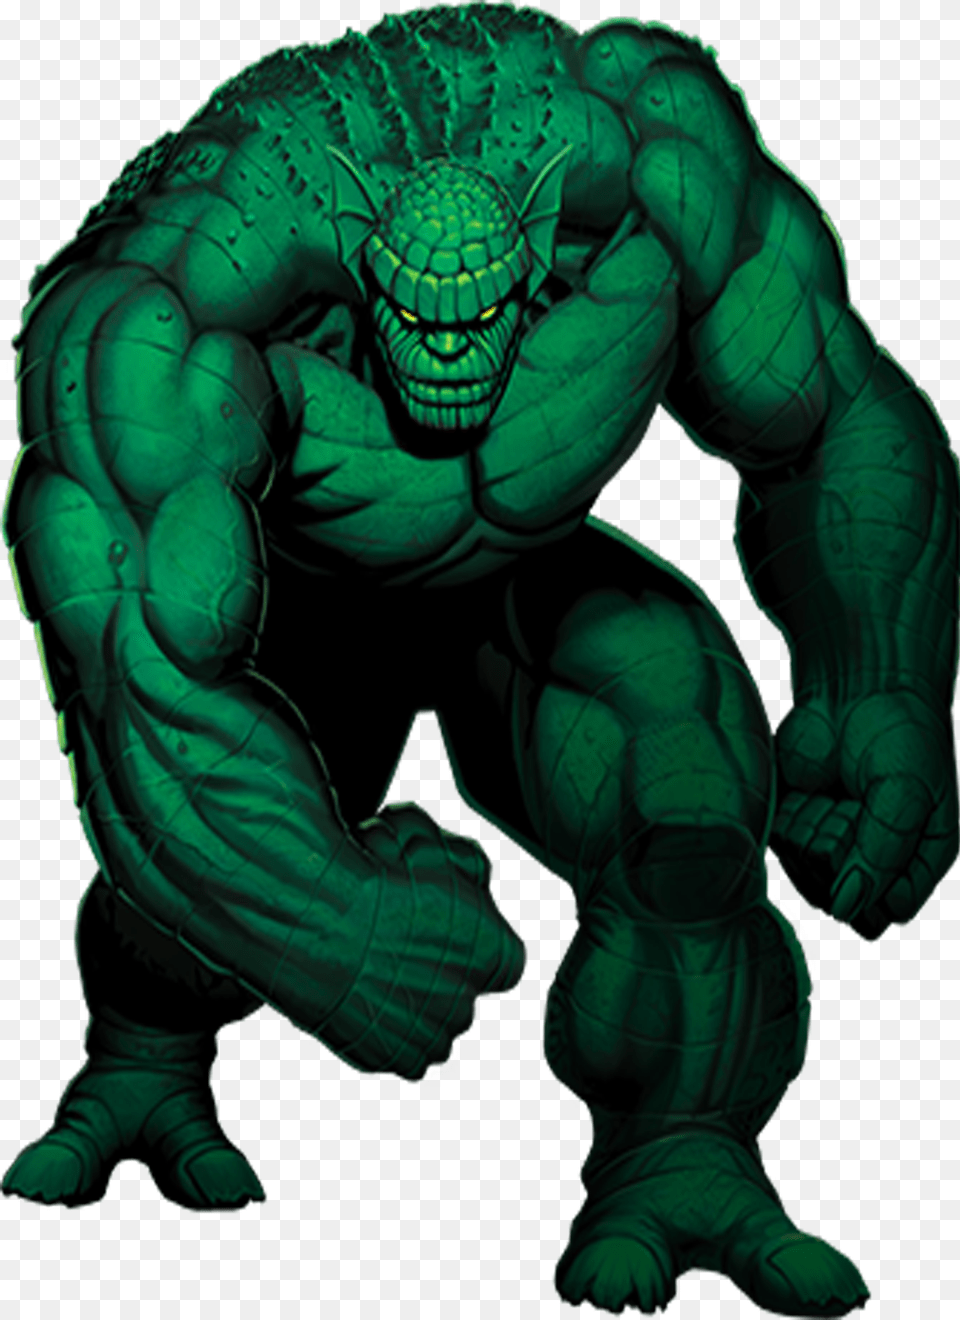 Abomination Emil Blonsky Marvel, Green, Adult, Male, Man Png Image